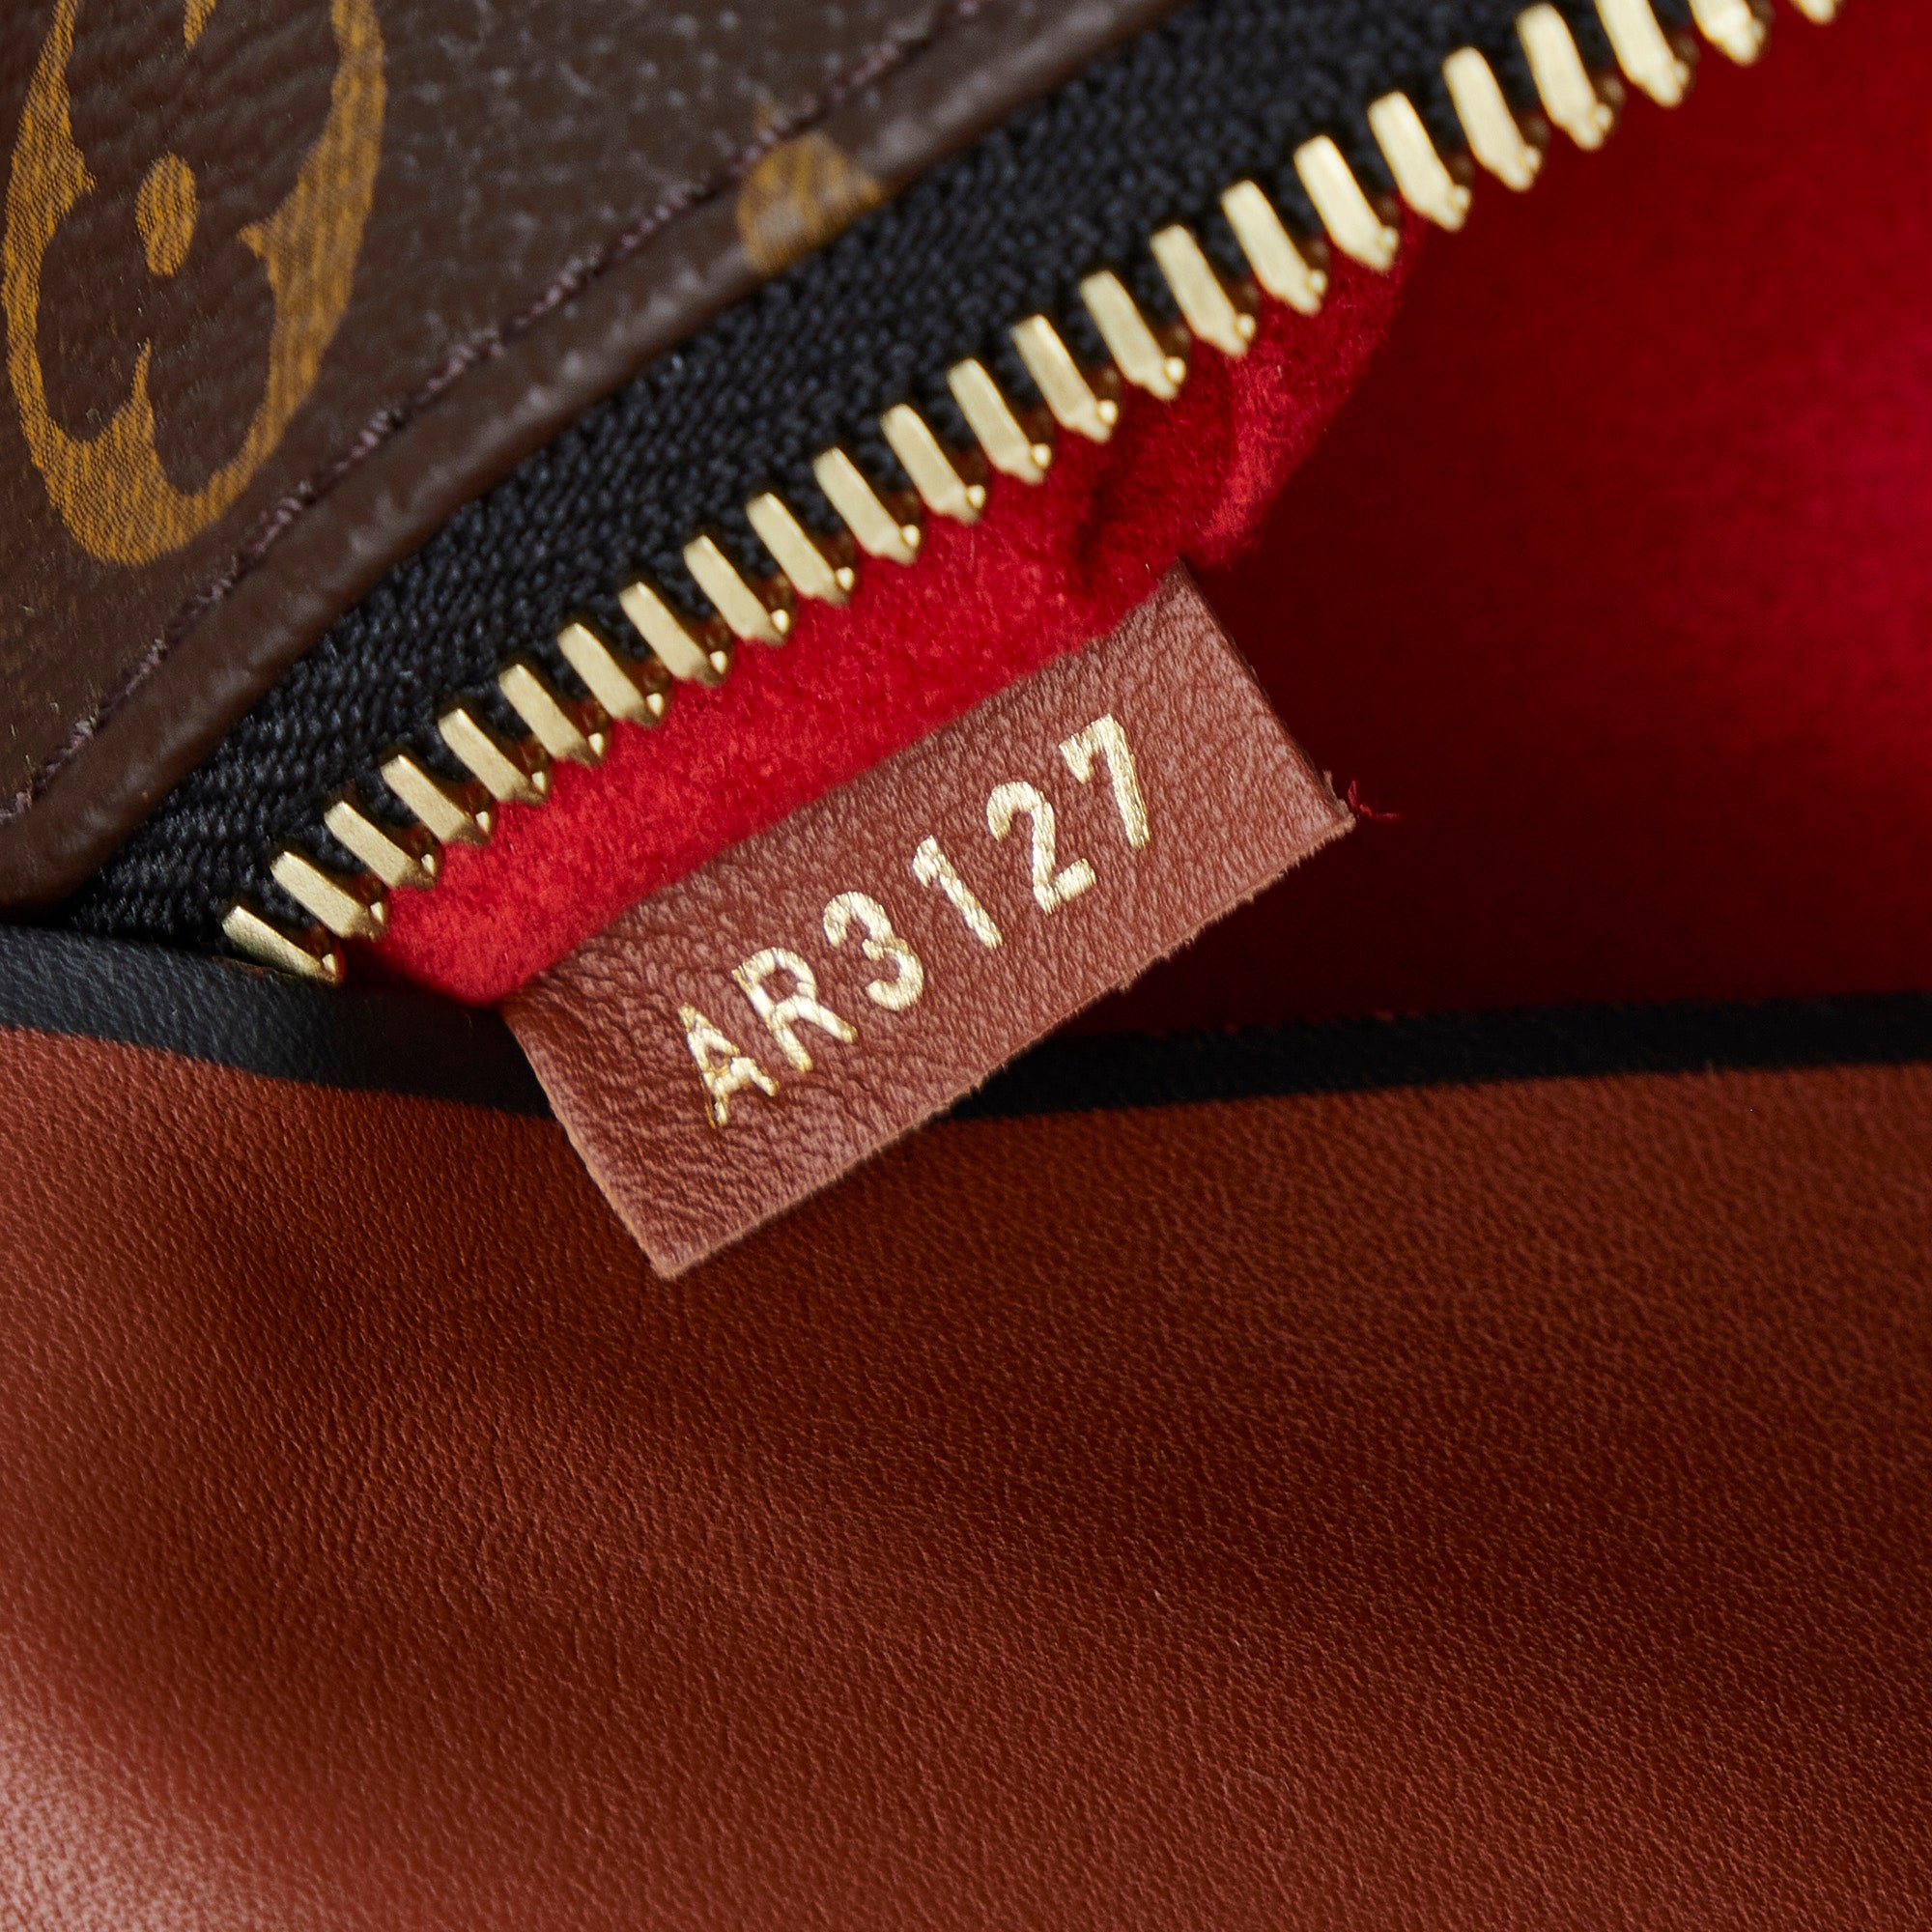 Louis Vuitton Tuileries Besace Bag Brown/Red Monogram